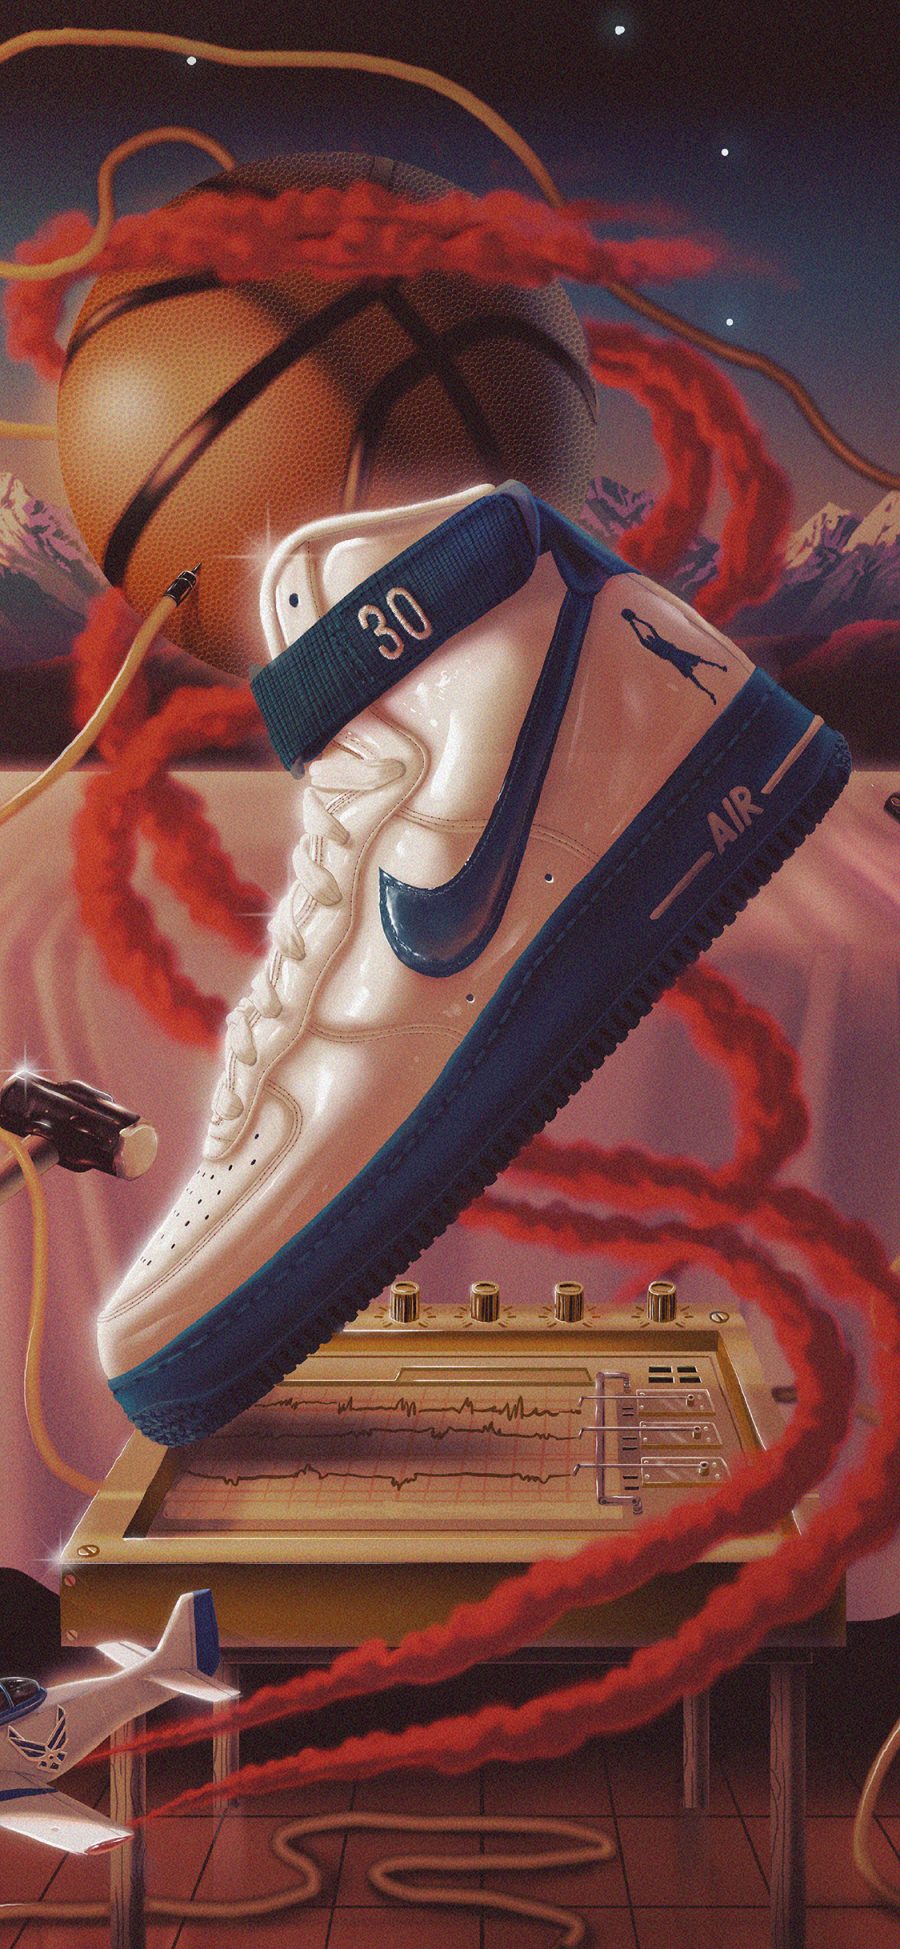 [2436×1125]插图 Nike 品牌 鞋子 篮球 苹果手机动漫壁纸图片